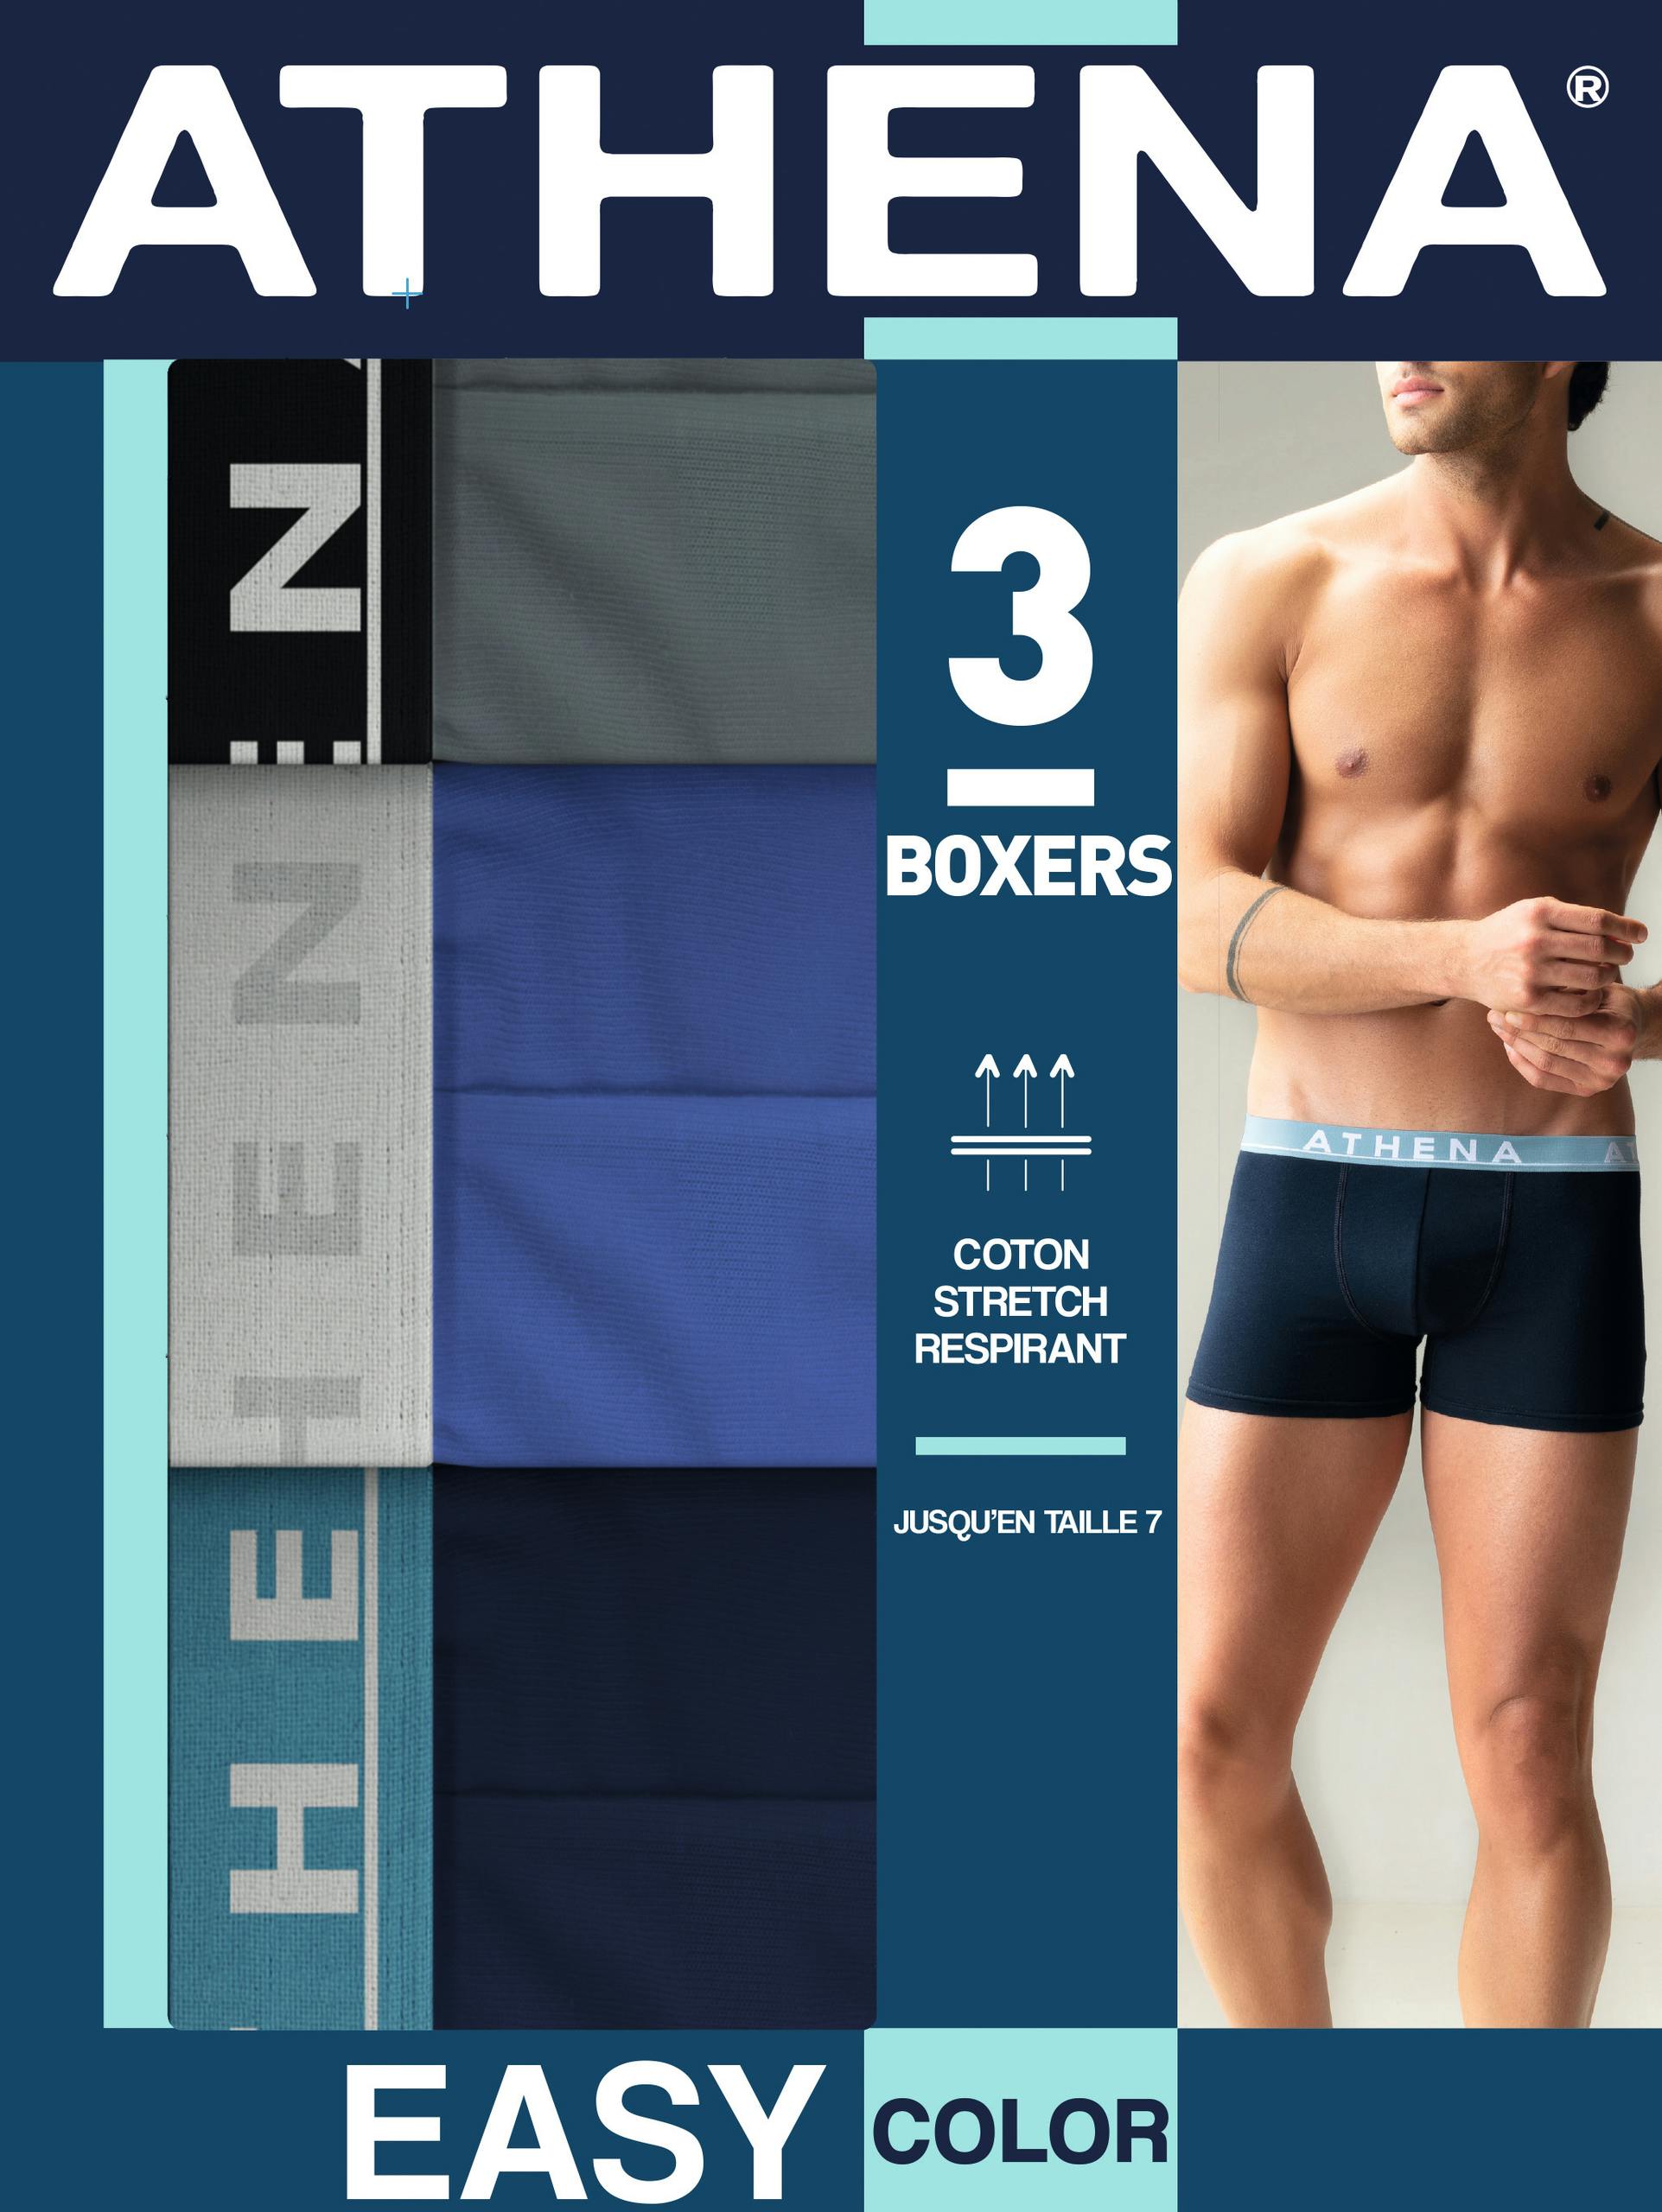 Athena - Lot 3 Boxers Unis Marine/bleu/gris Homme Easy Color